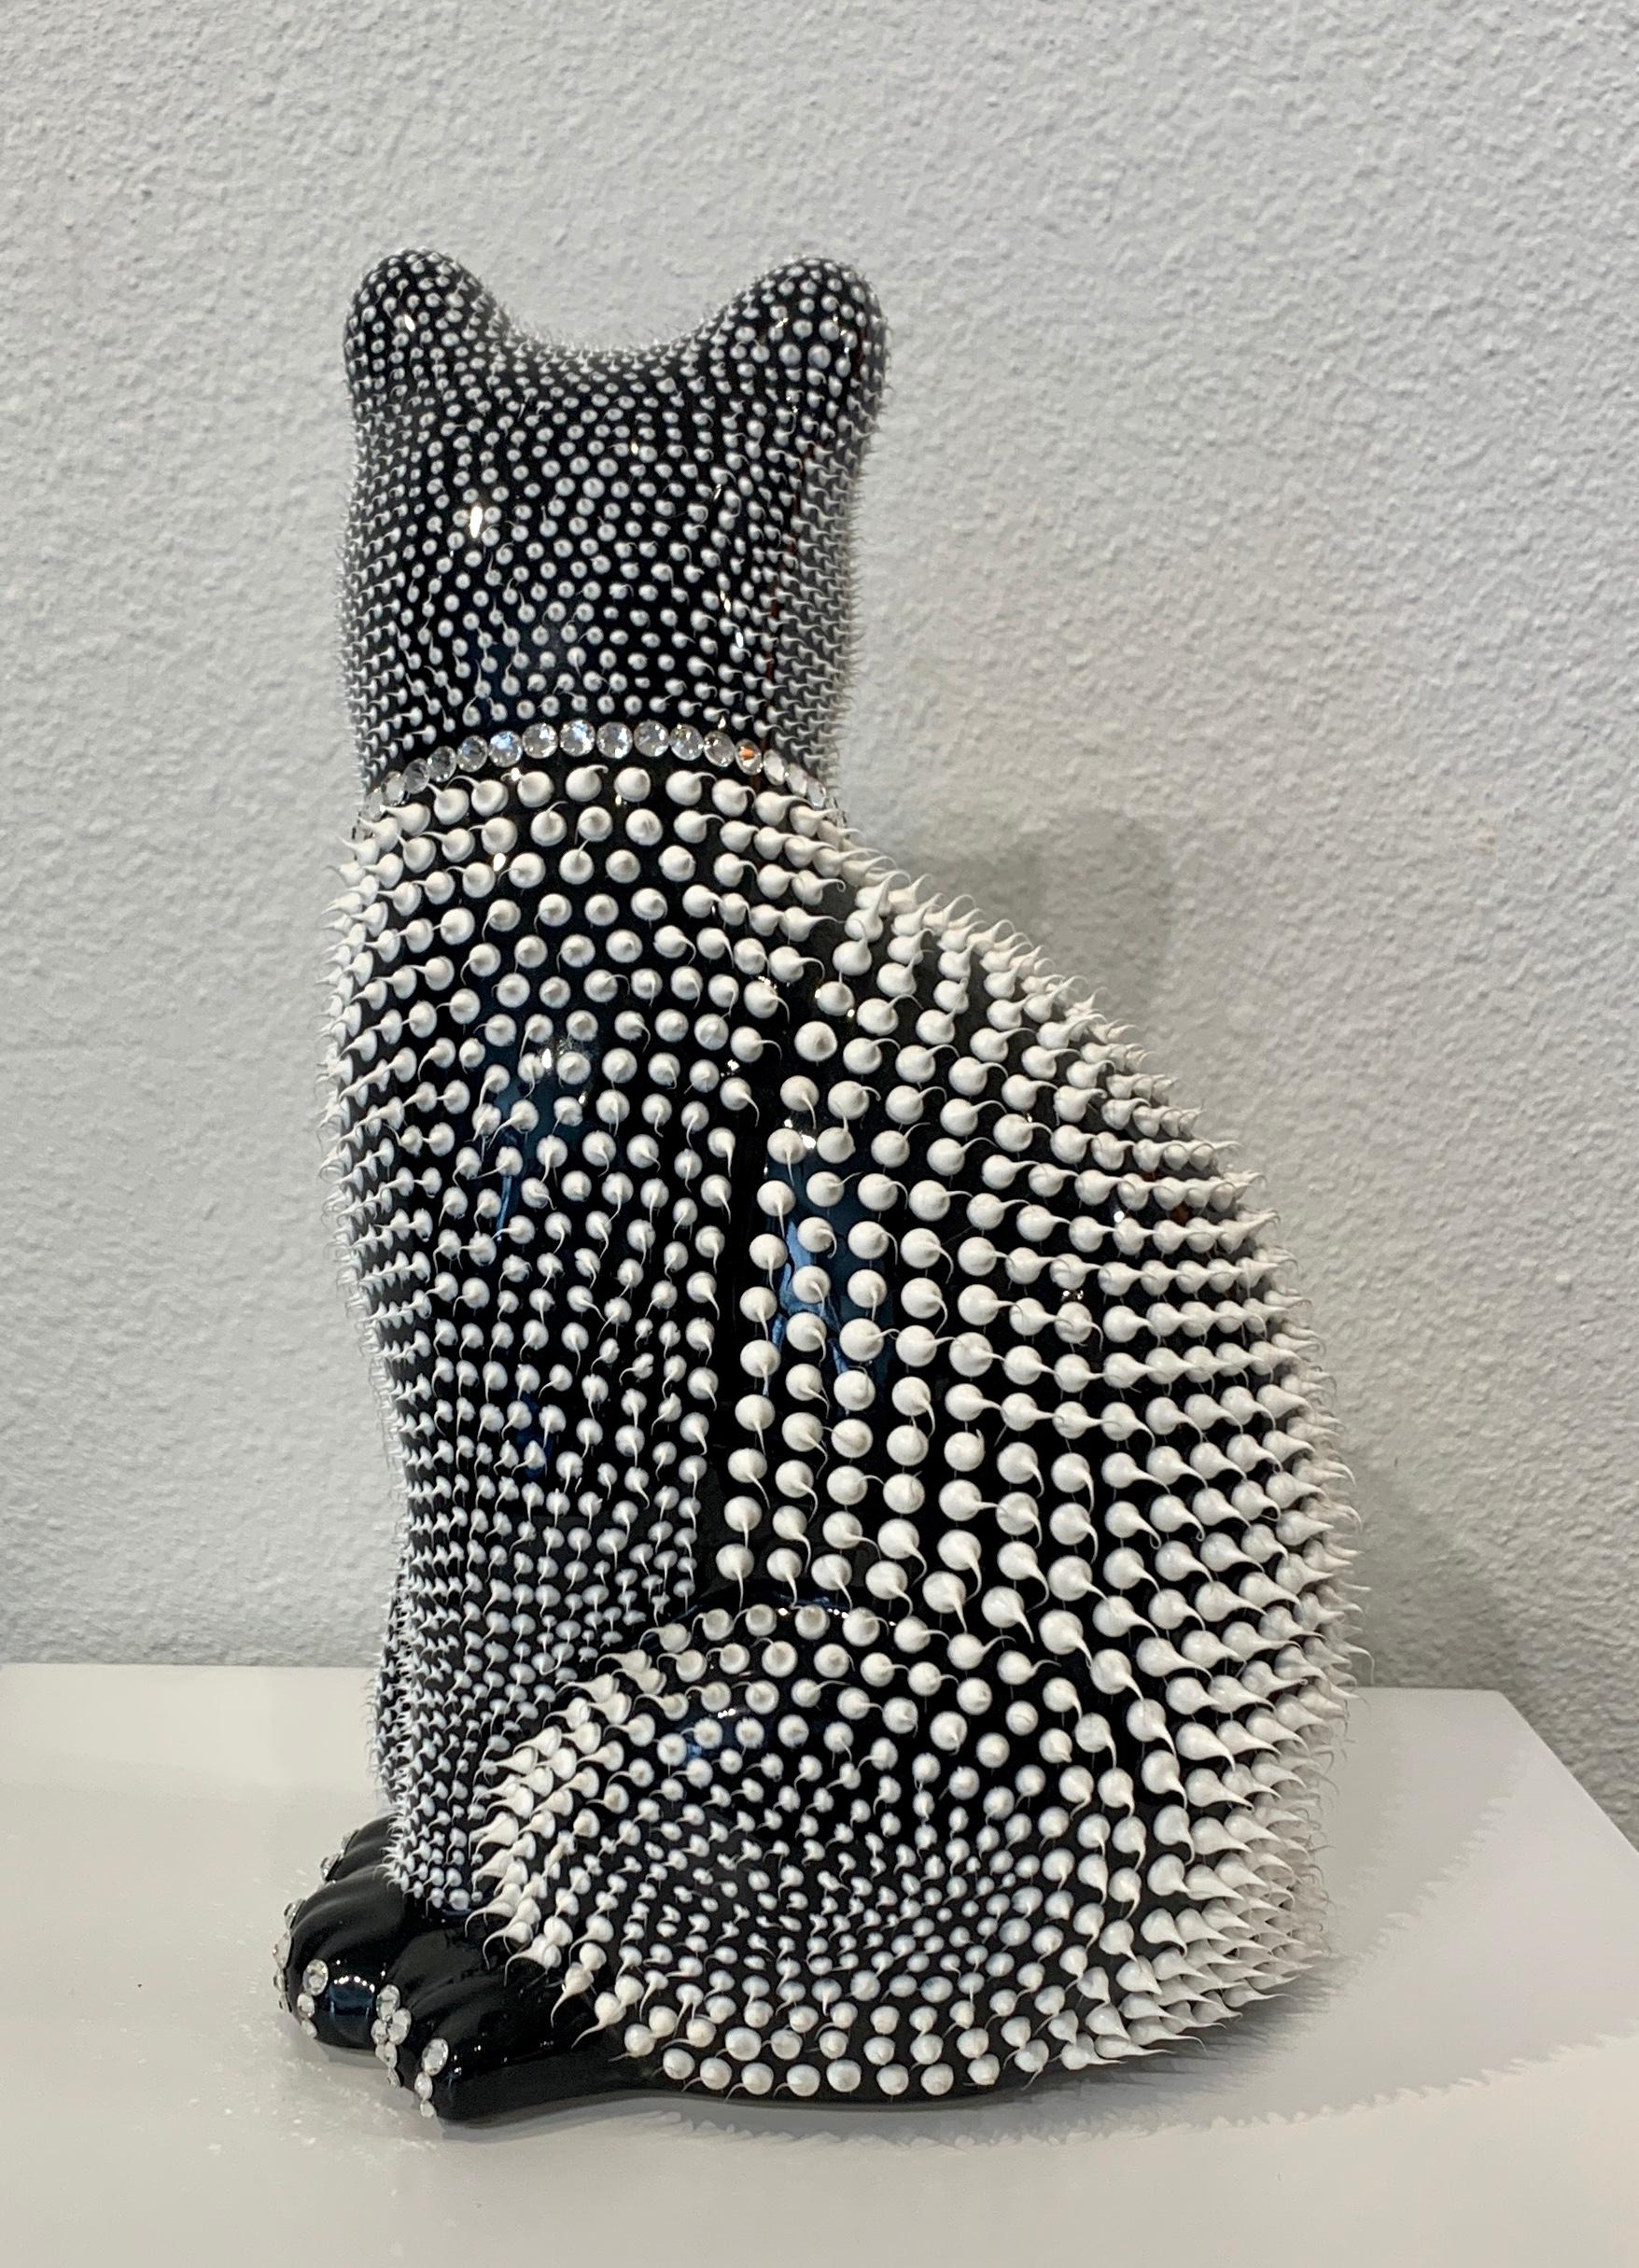 Cat (Black) - Sculpture by Eddy Maniez